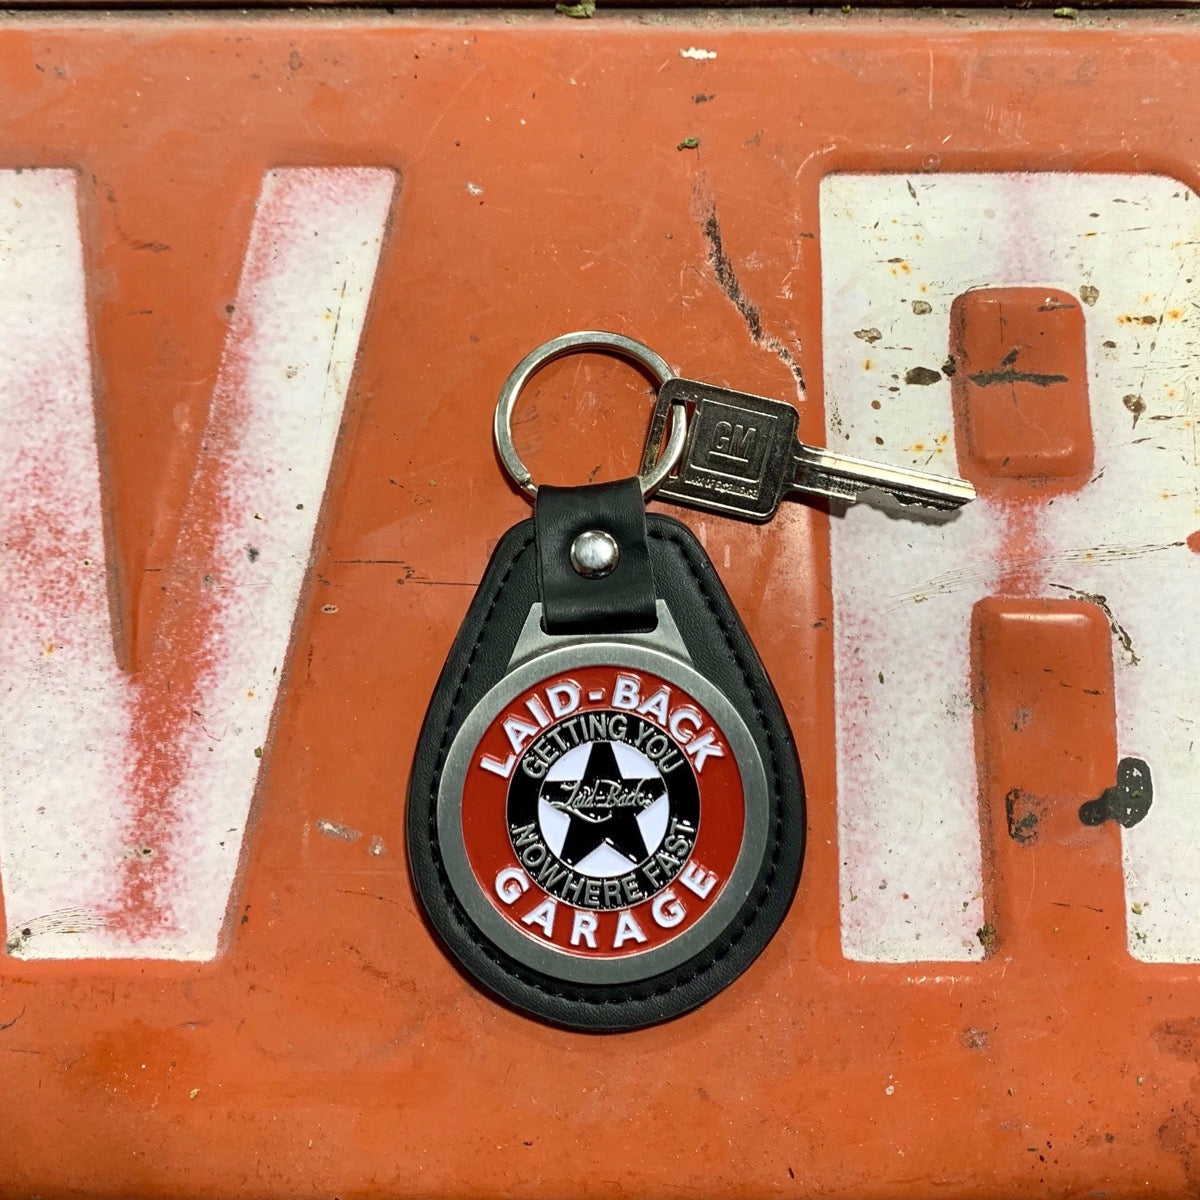 Garage Star Old Skool Keychain - Laid-Back